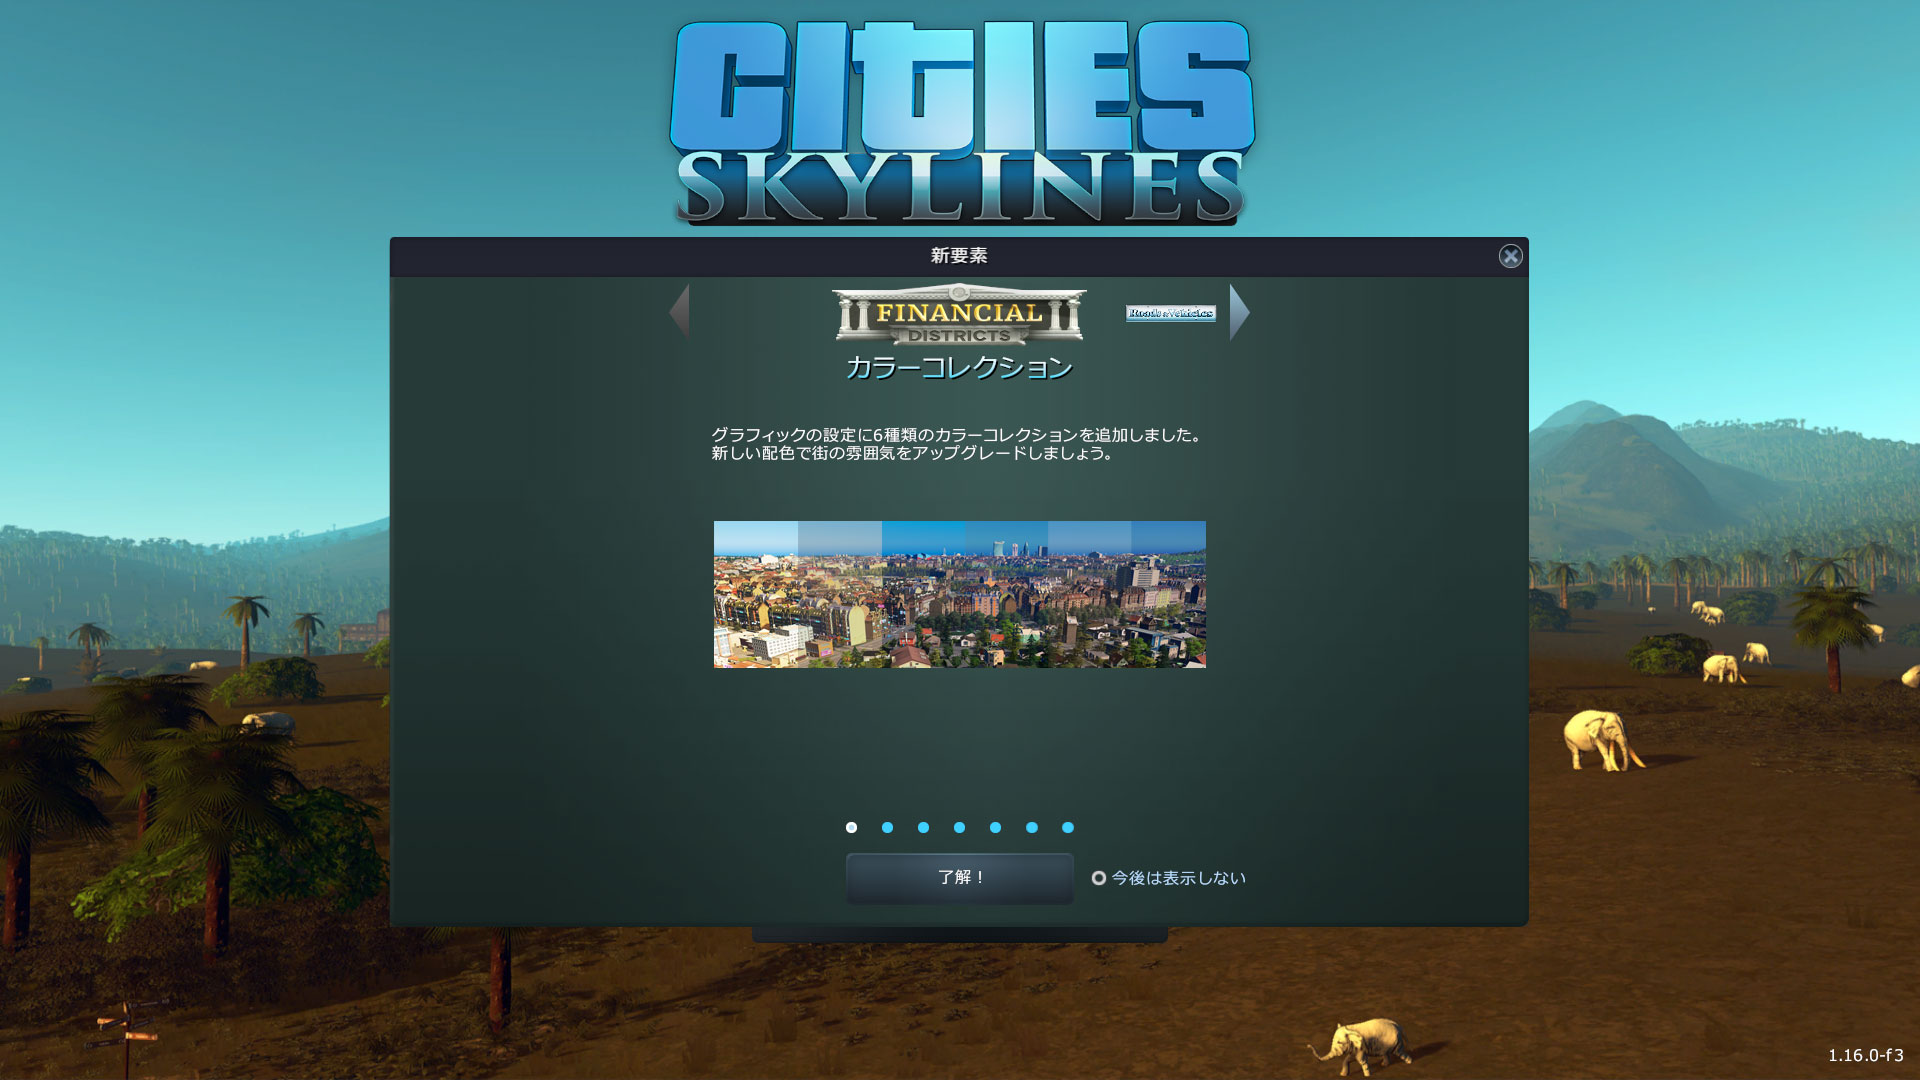 Cities_Skylines-3373